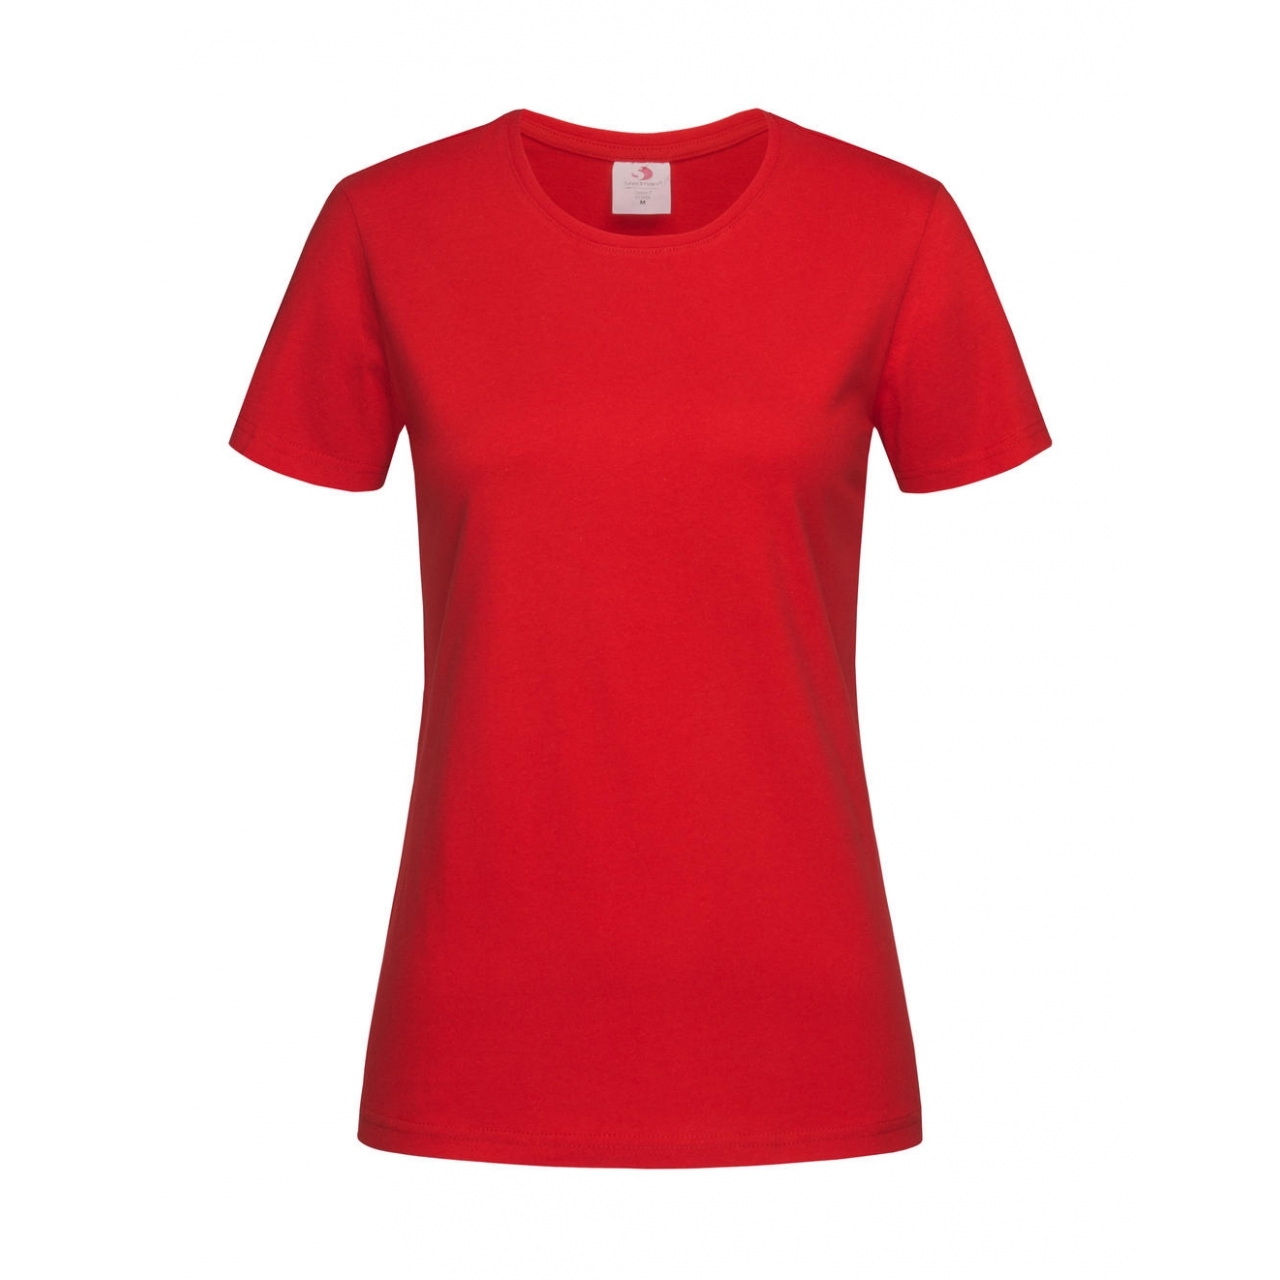 Tričko dámské Stedman Fitted s kulatým výstřihem - červené, M